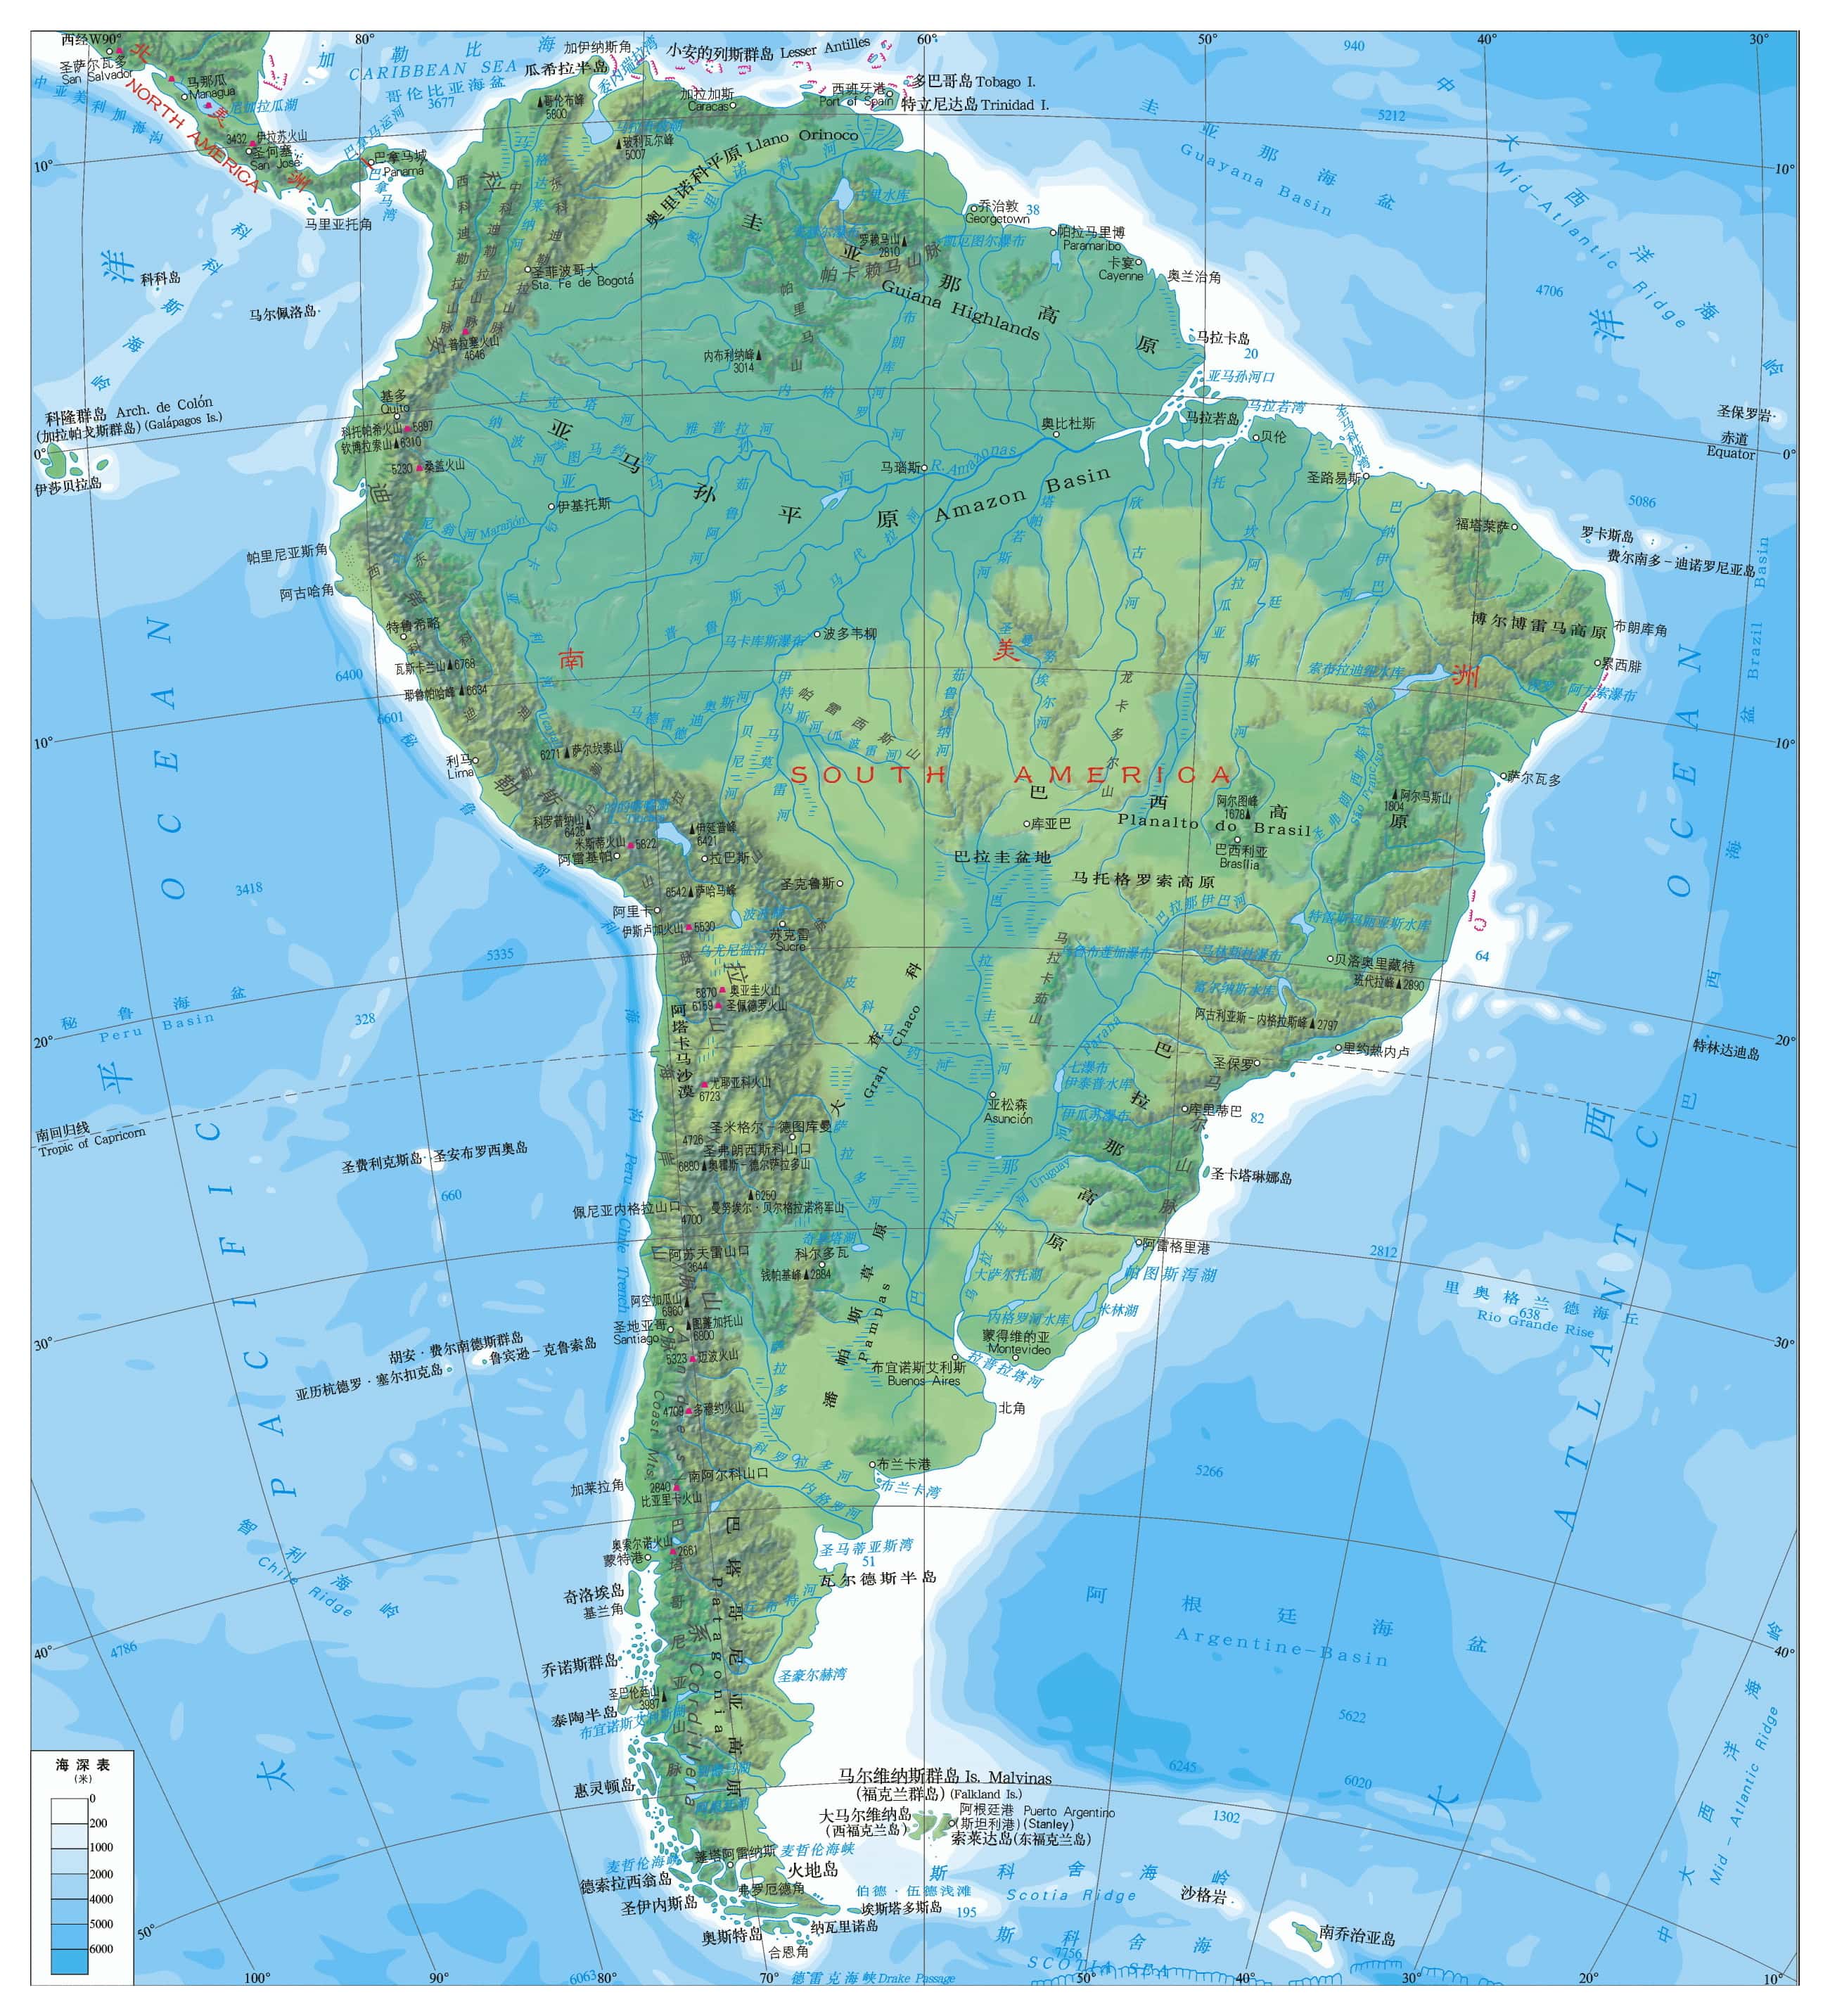 南美洲地形图.jpg